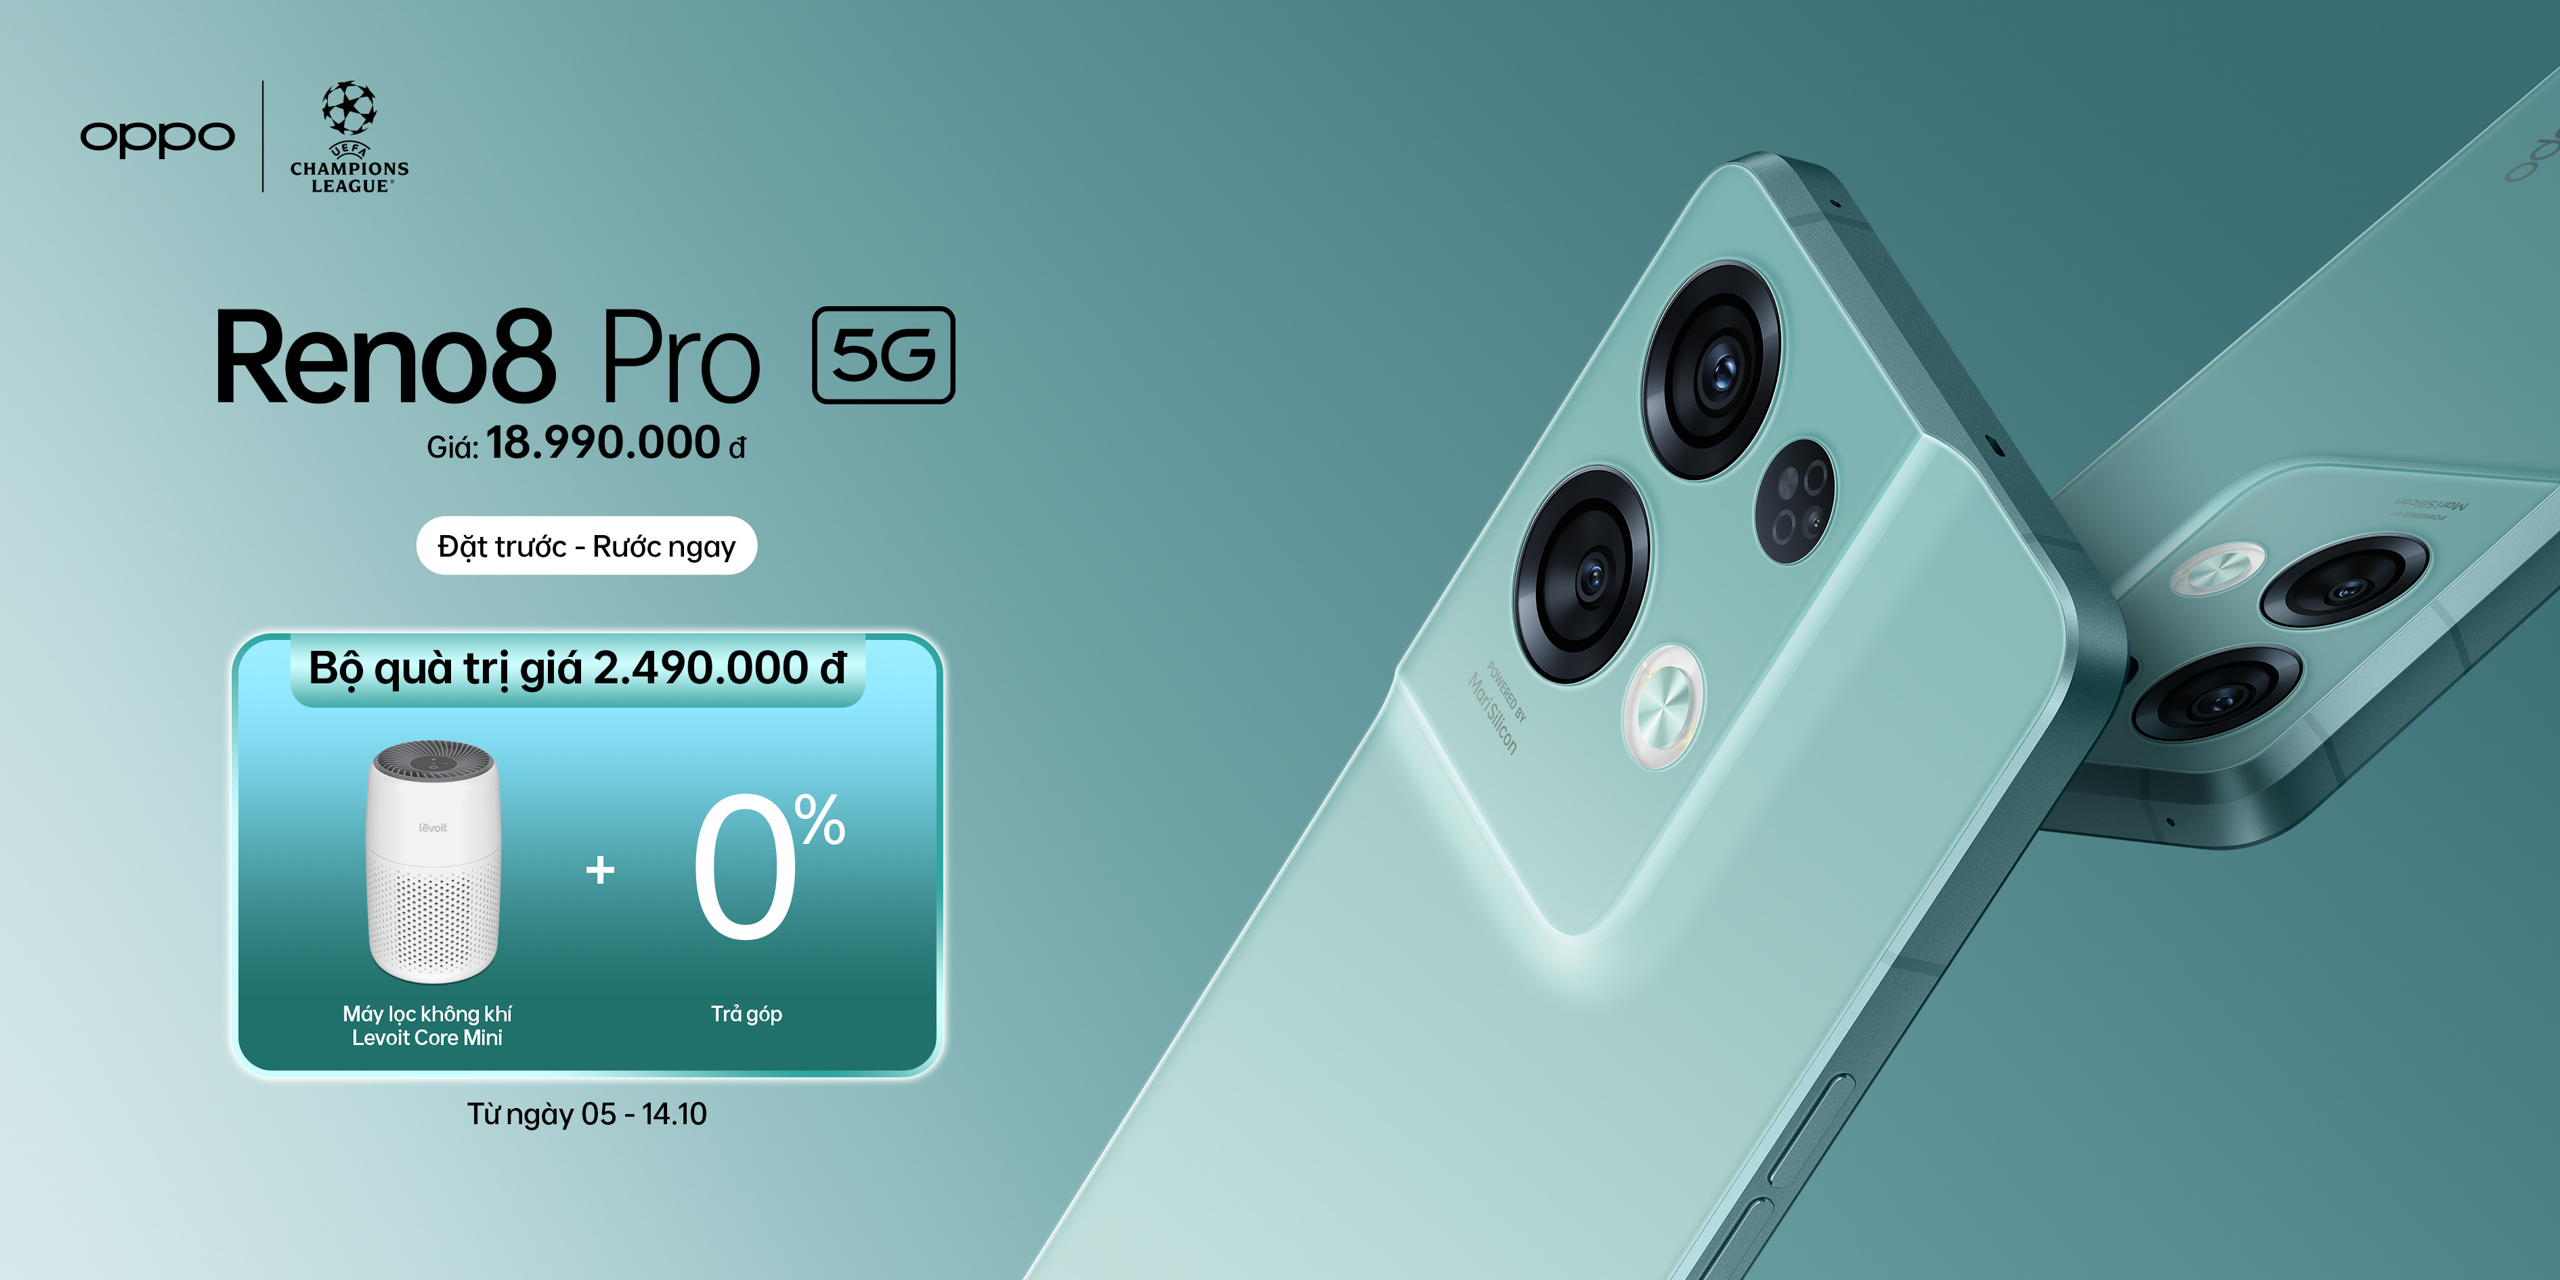 OPPO Reno8 Pro 5G chính thức ra mắt “Chuyên gia chân dung đẳng cấp Pro” được hỗ trợ bởi công nghệ siêu chip kép